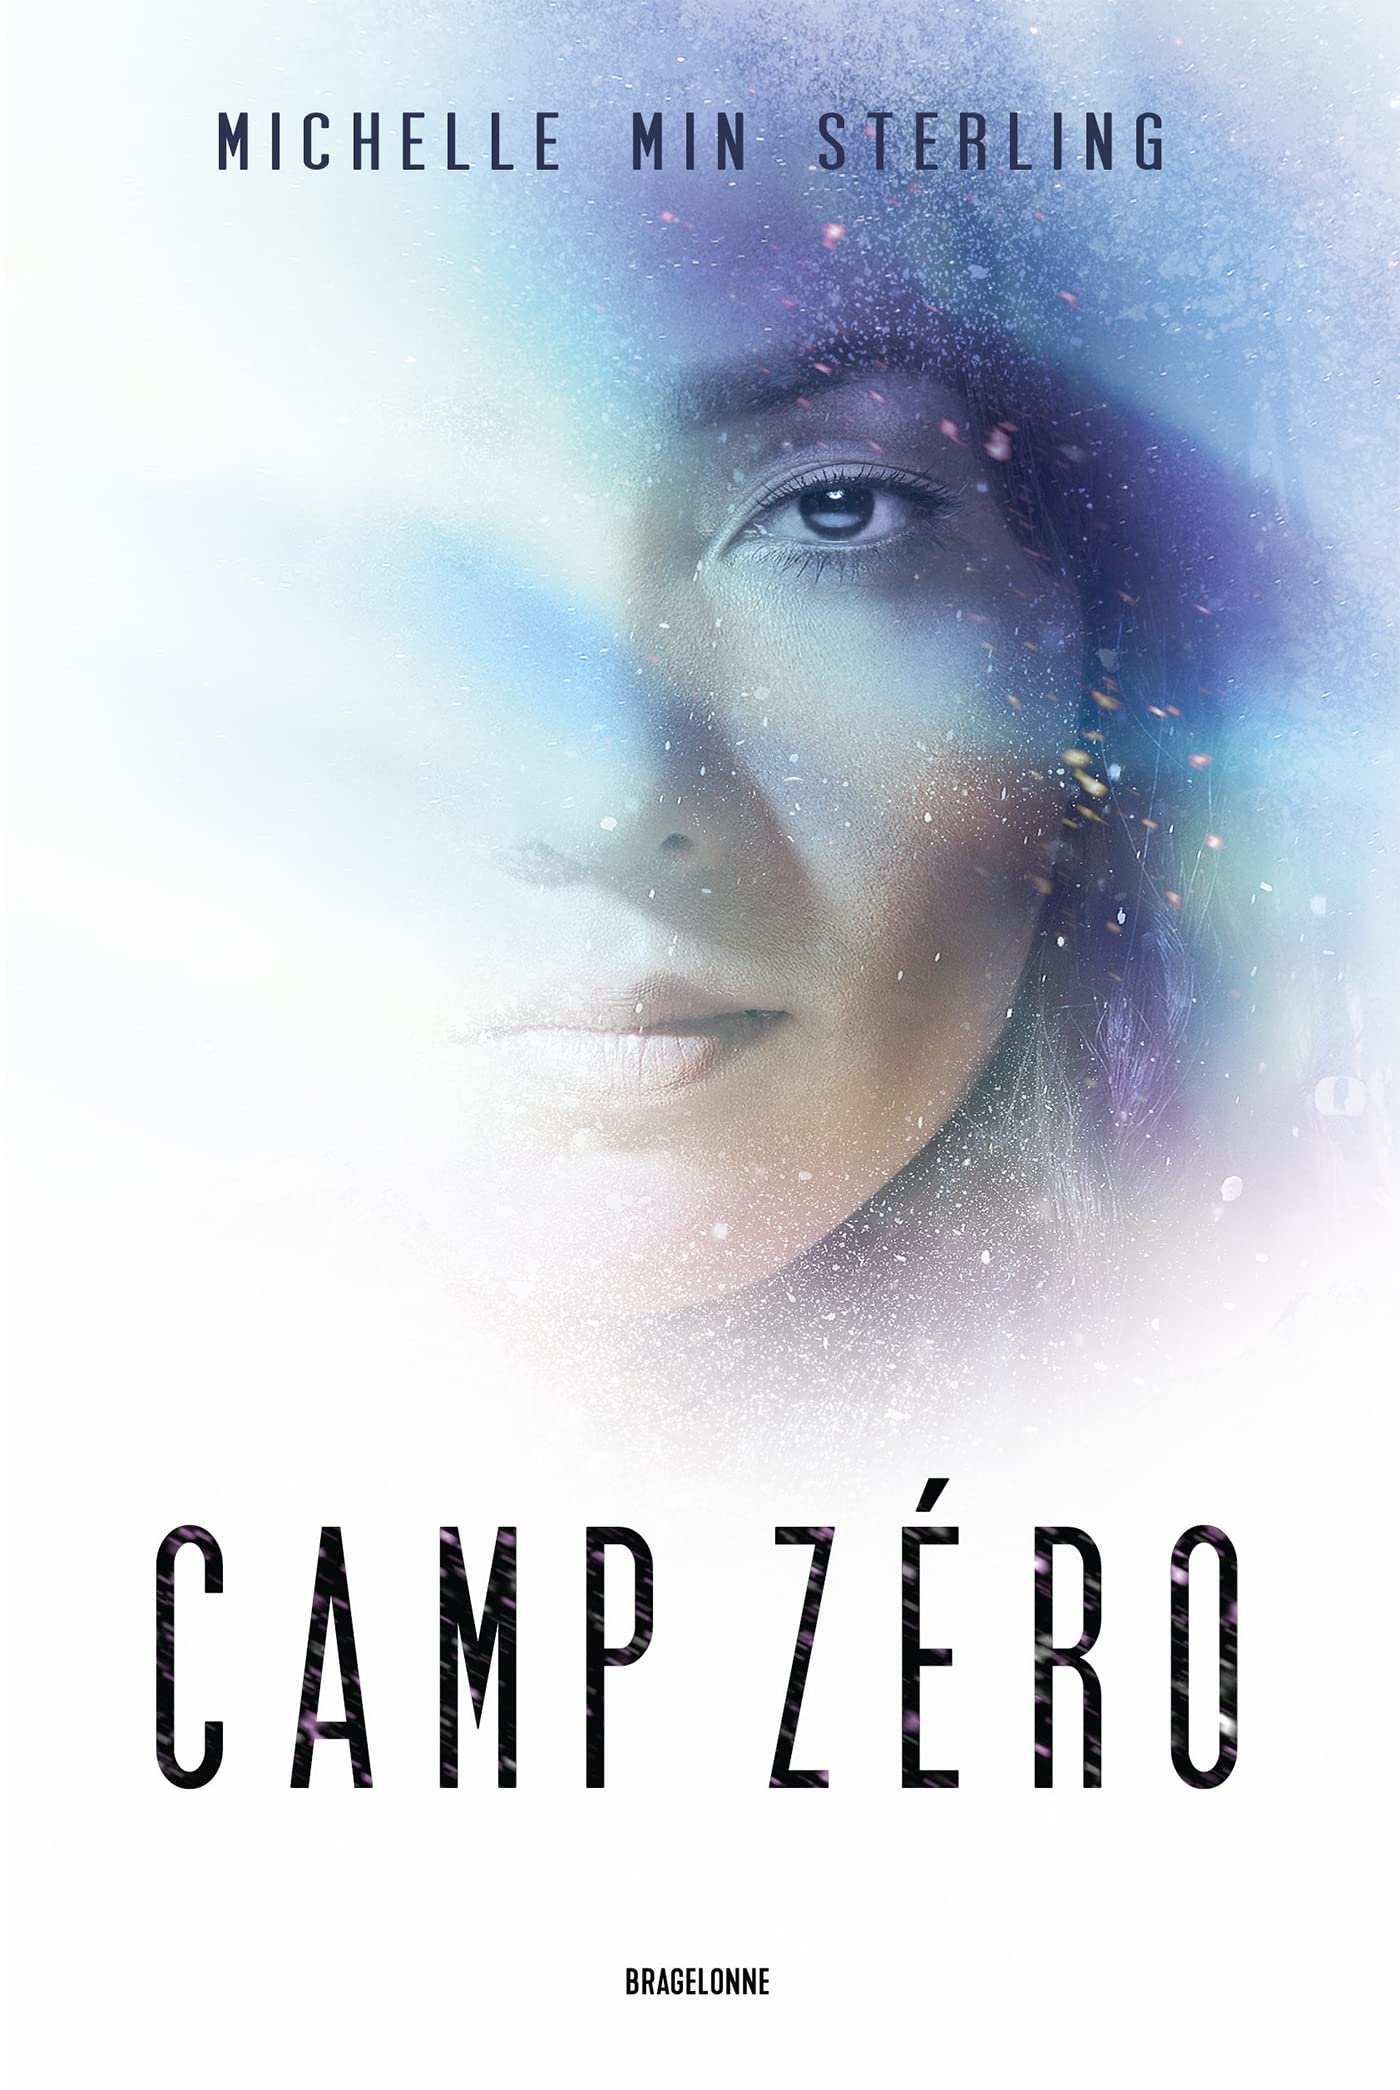 Michelle Min Sterling – Camp Zero